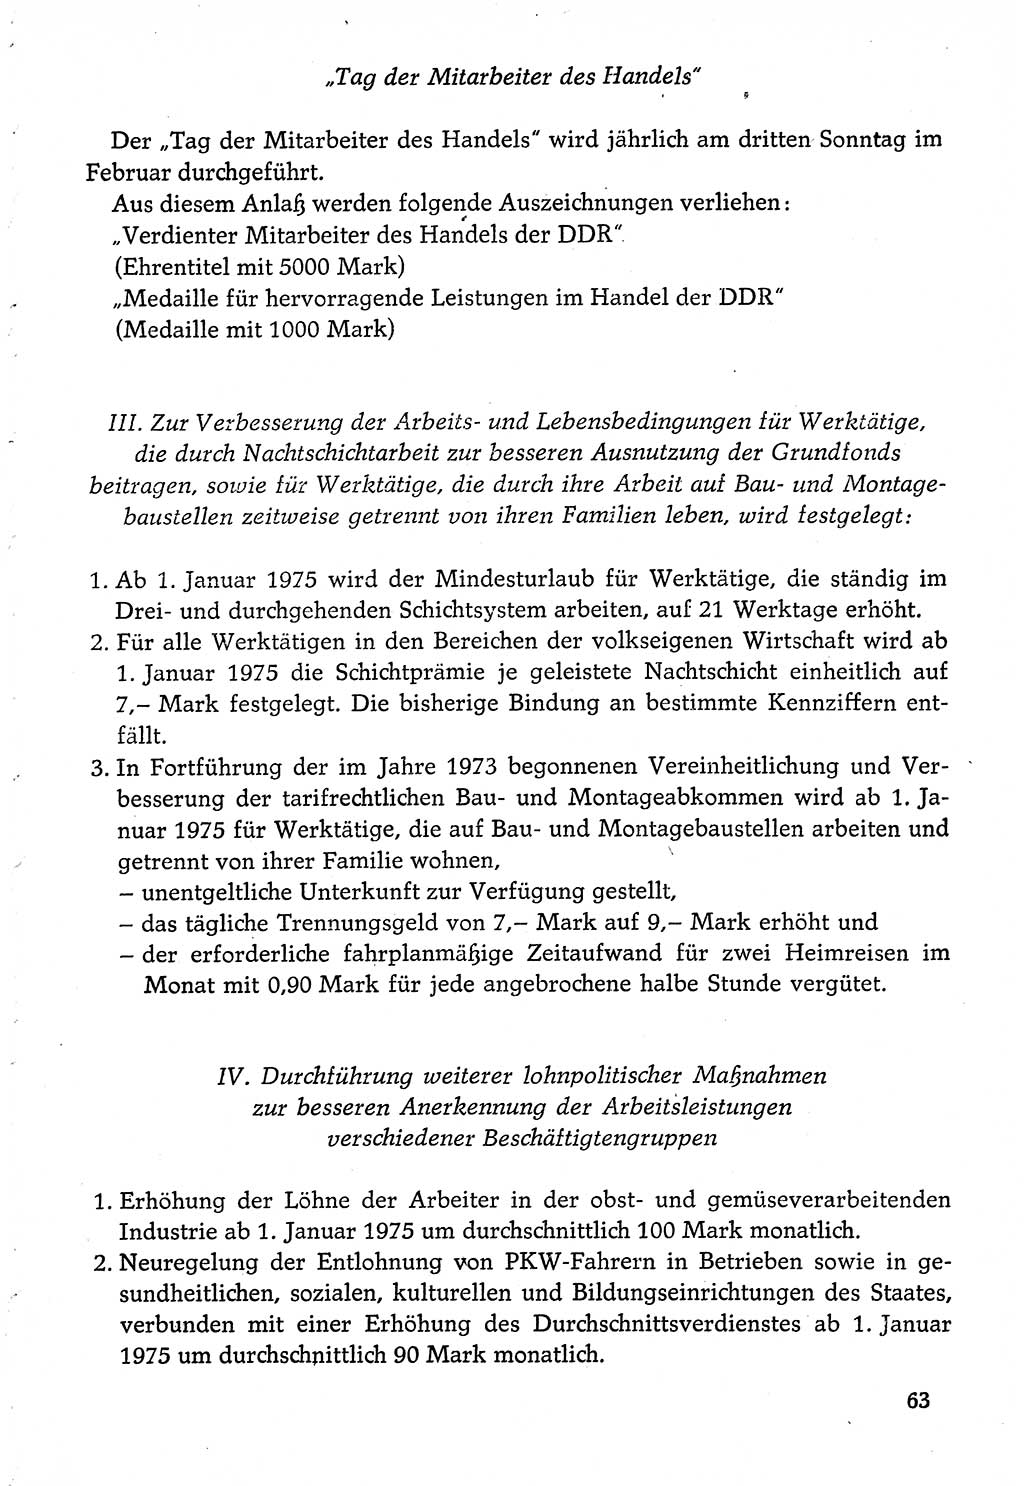 Dokumente der Sozialistischen Einheitspartei Deutschlands (SED) [Deutsche Demokratische Republik (DDR)] 1974-1975, Seite 63 (Dok. SED DDR 1978, Bd. ⅩⅤ, S. 63)